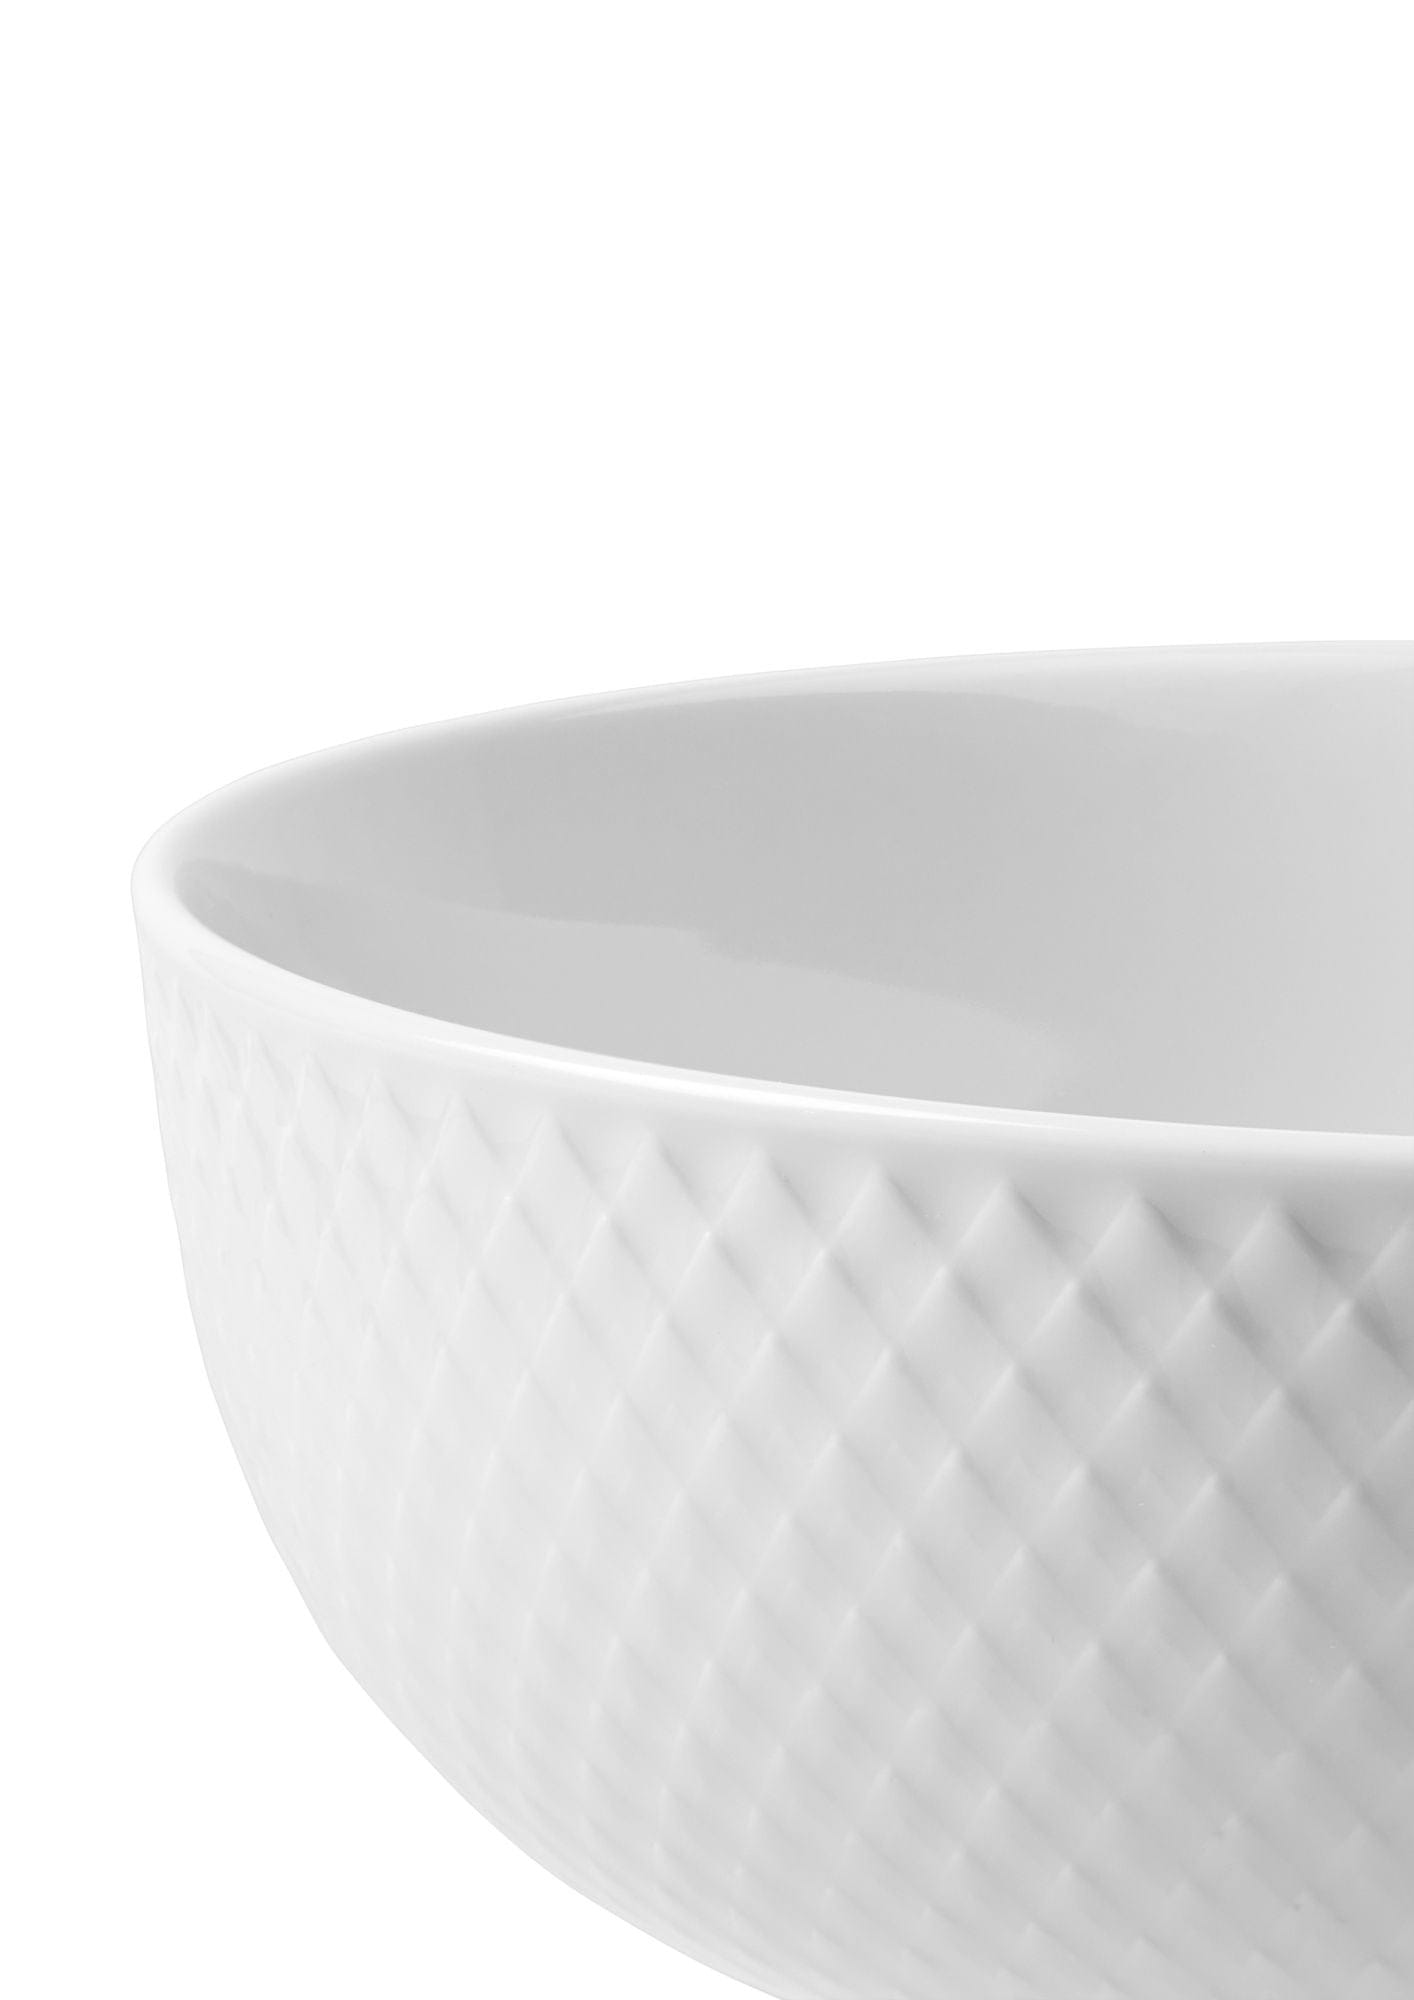 Lyngby Porcelæn Rhombe Bowl Ø15,5 cm, blanc